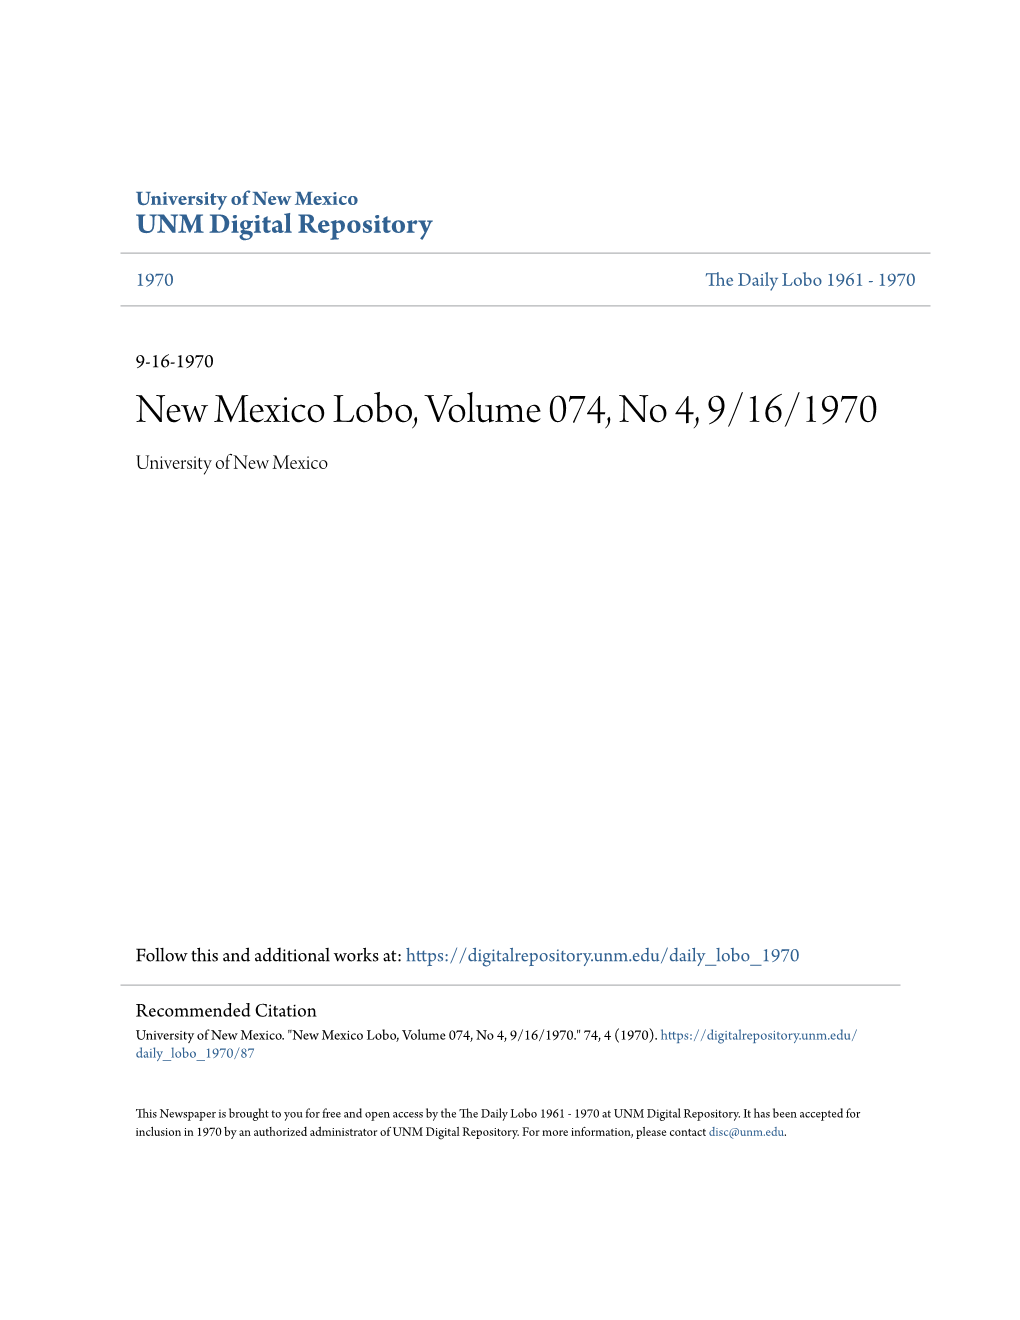 New Mexico Lobo, Volume 074, No 4, 9/16/1970 University of New Mexico